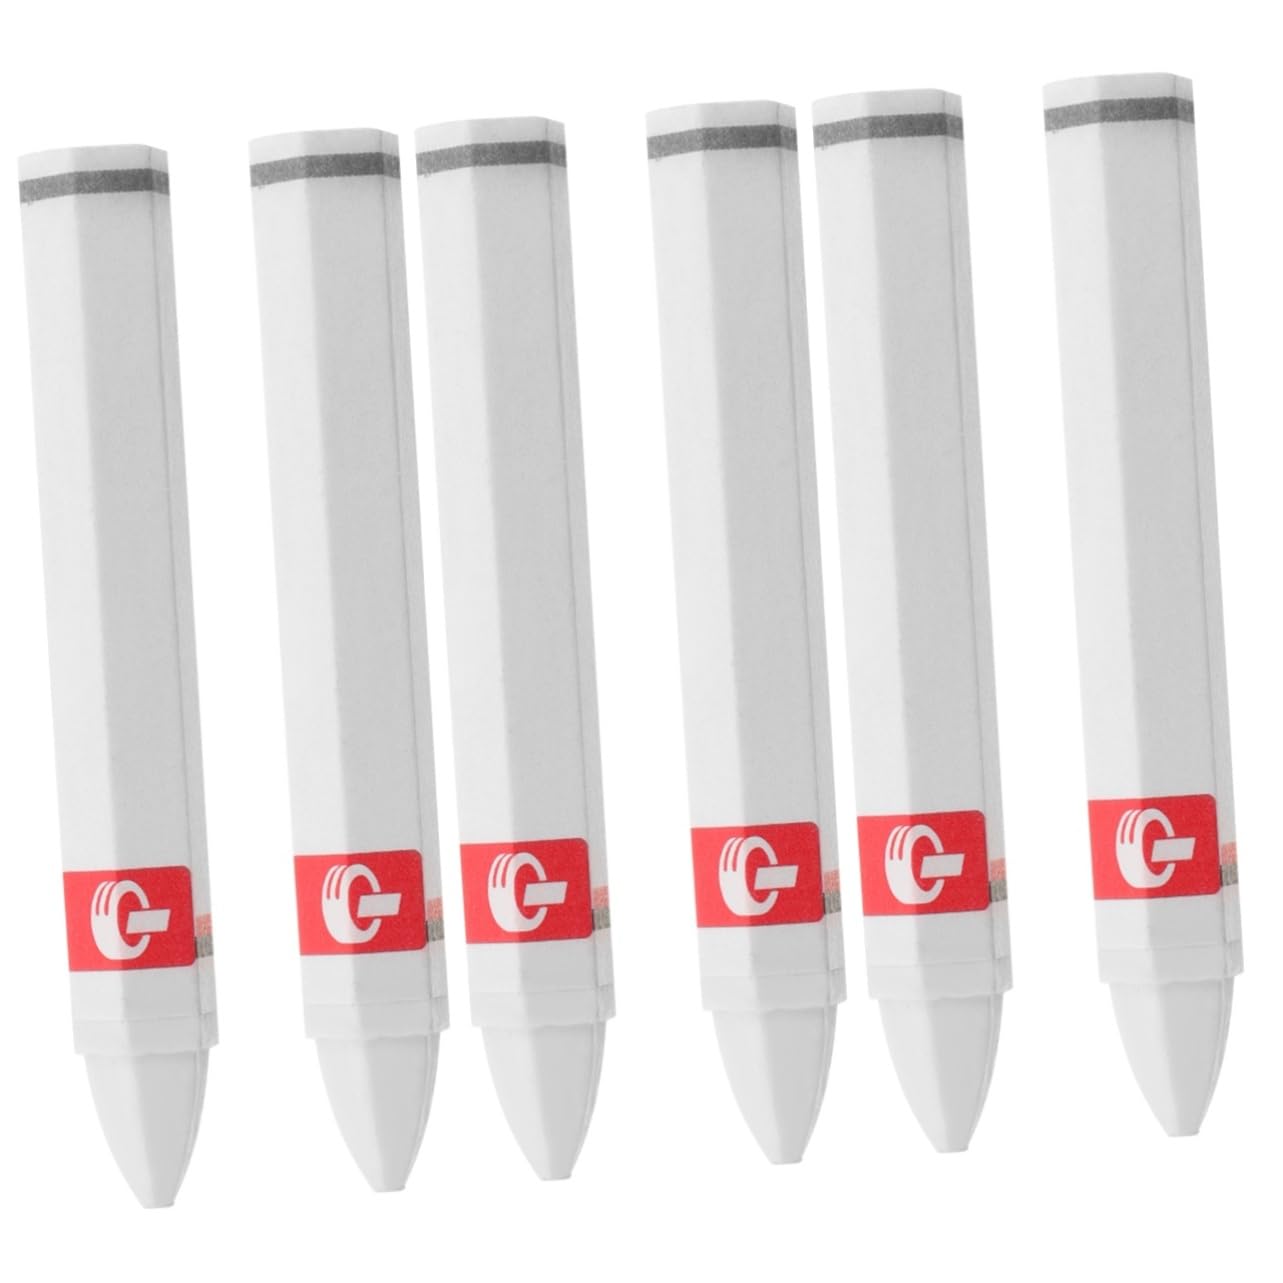 CLISPEED 6 Stk Textmarker Autoreifen Reifenstifte Markierungsstifte Reifenreparaturstifte Autozubehör Weiß Wachs von CLISPEED